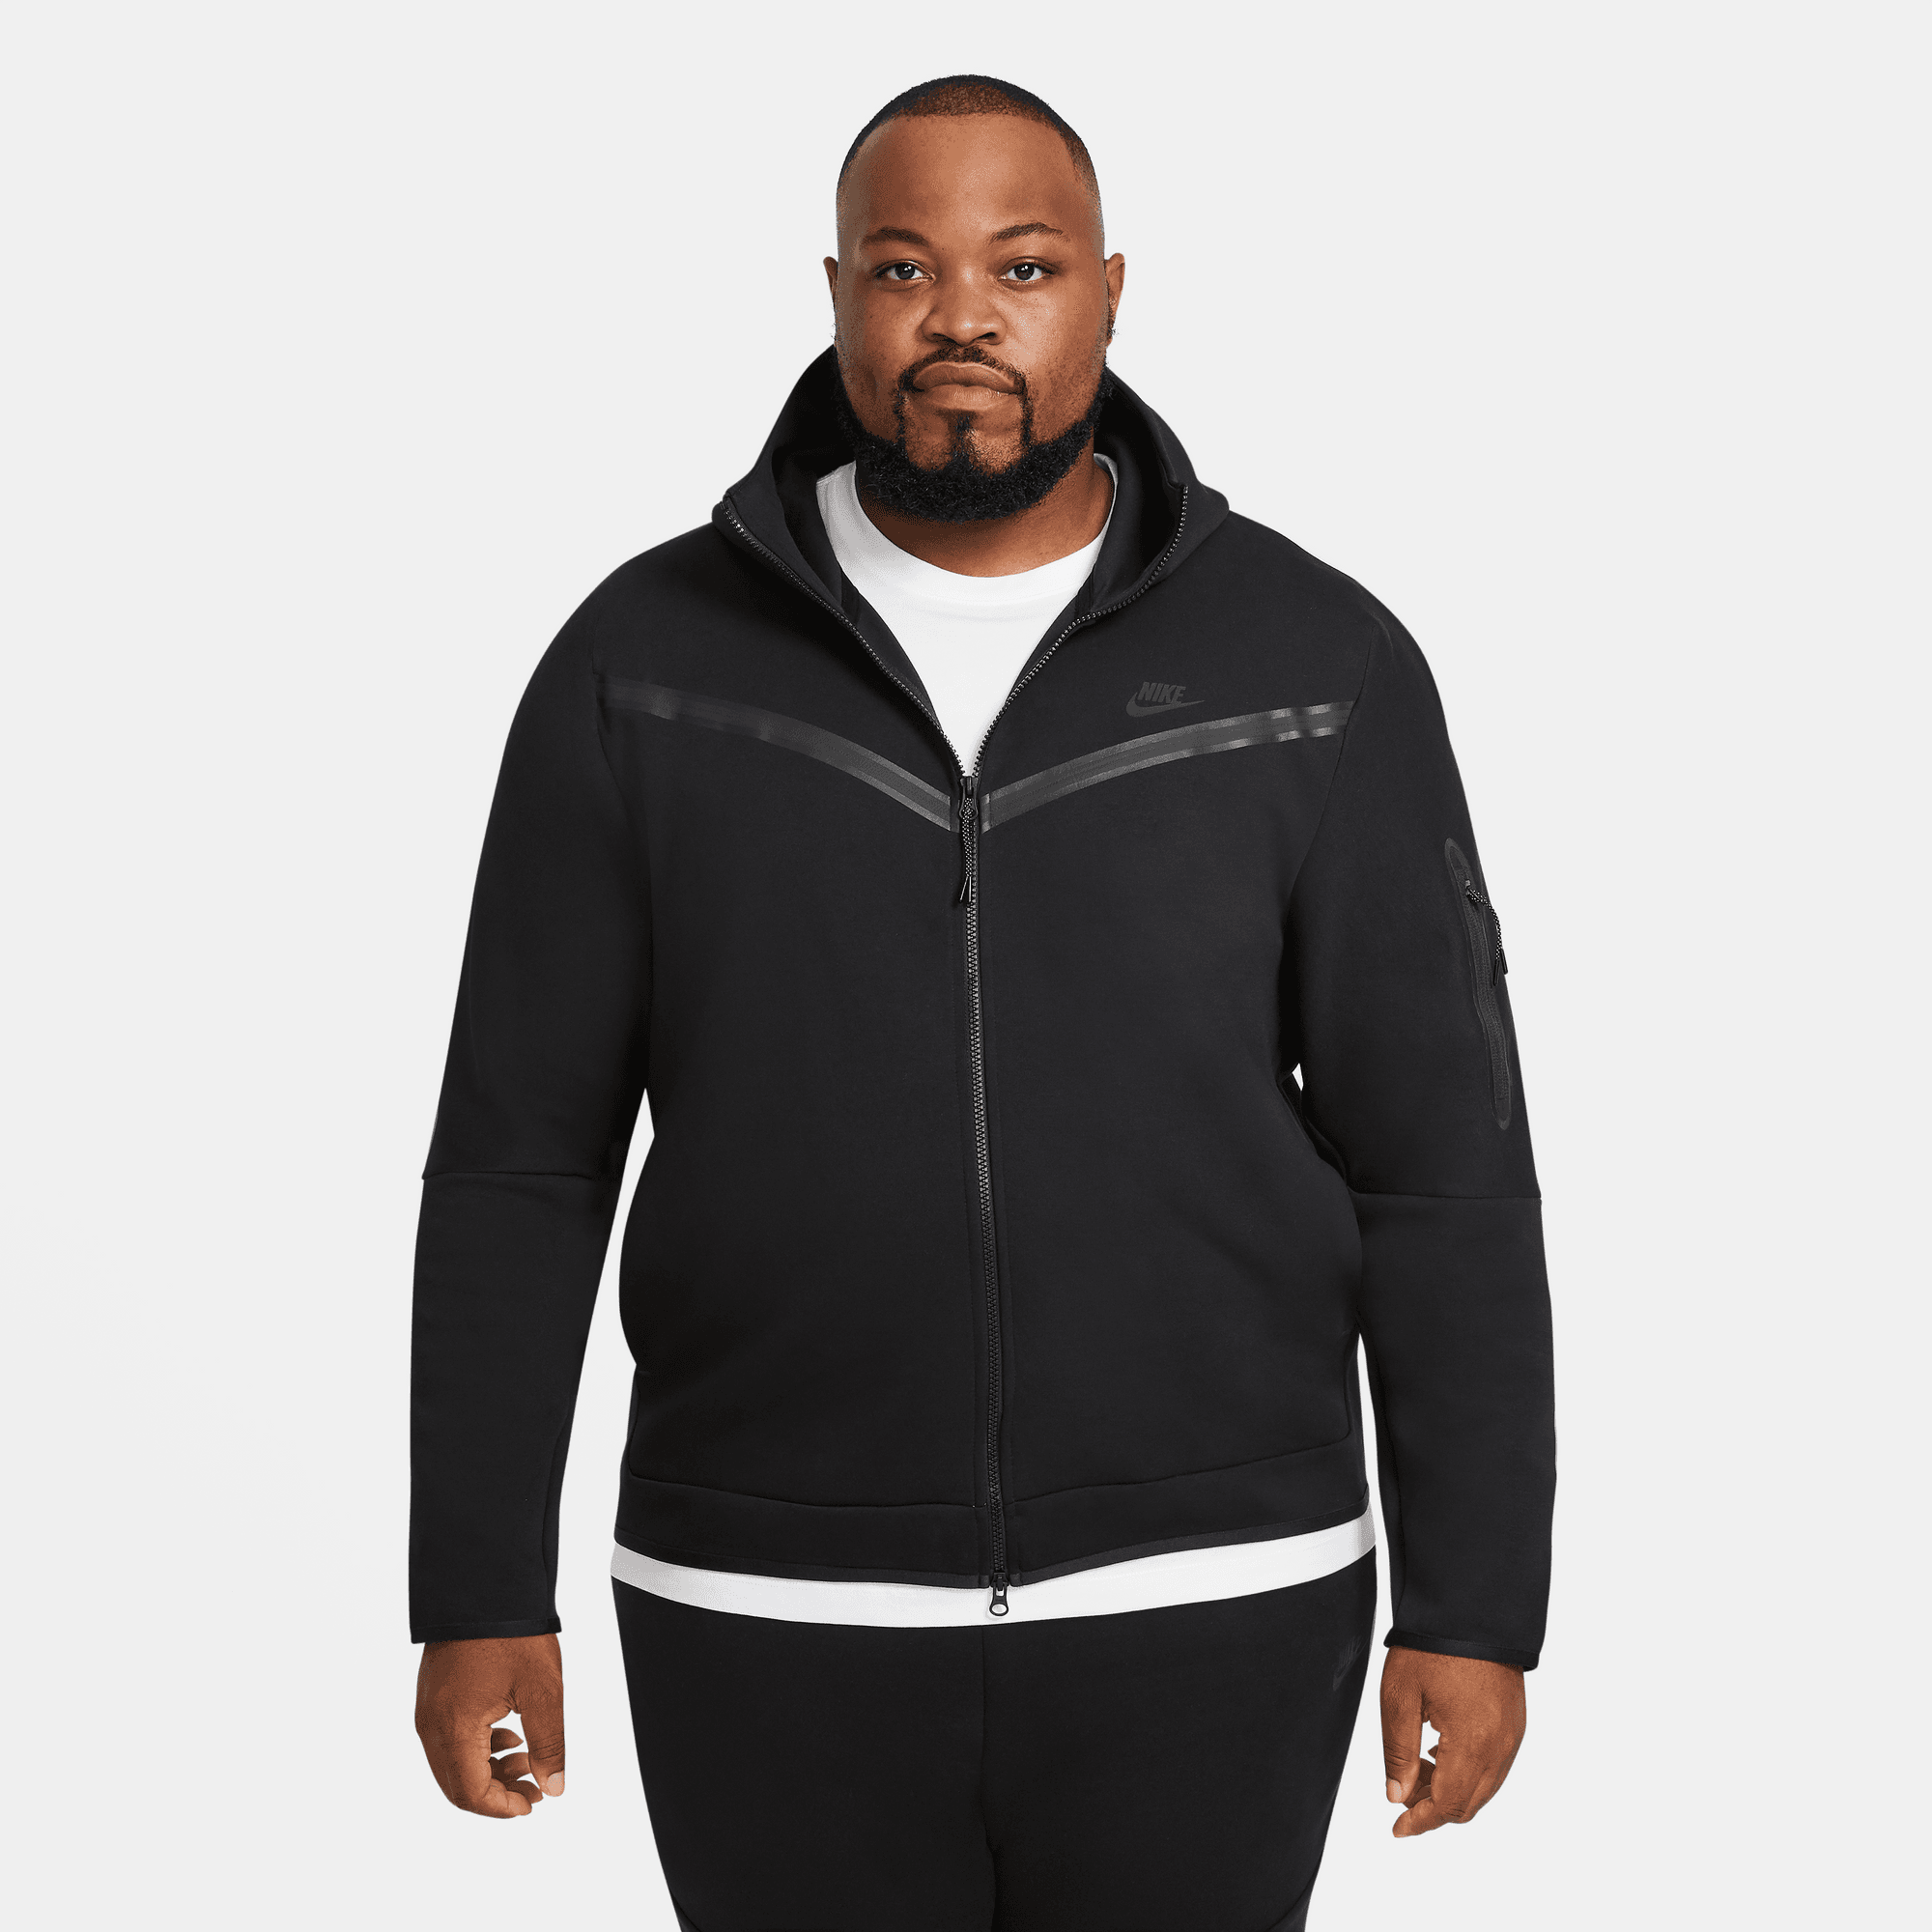 Nike Sportswear Tech Fleece Men's Full-Zip Hoodie.